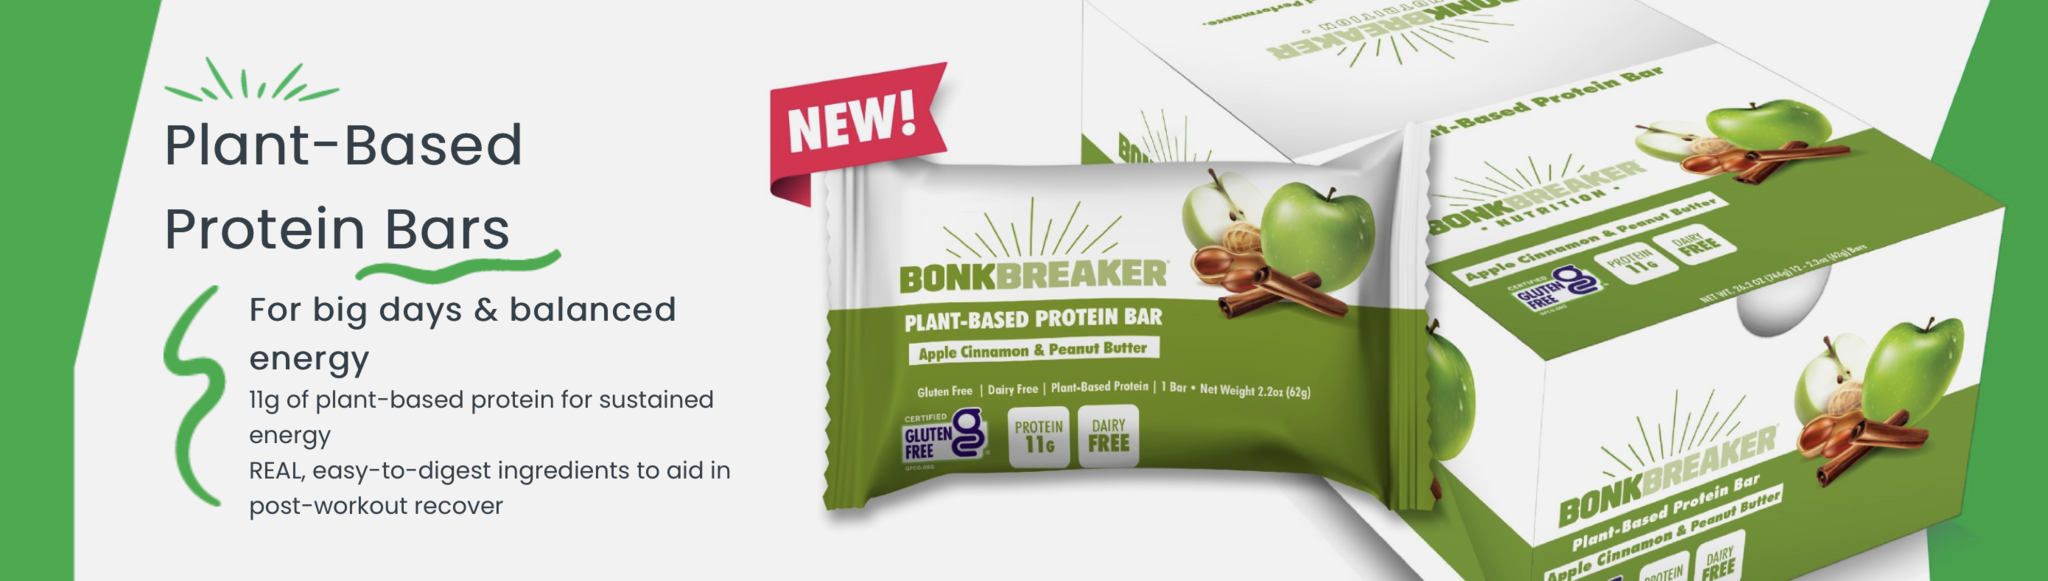 Bonk Breaker Plant Based Protein Bars